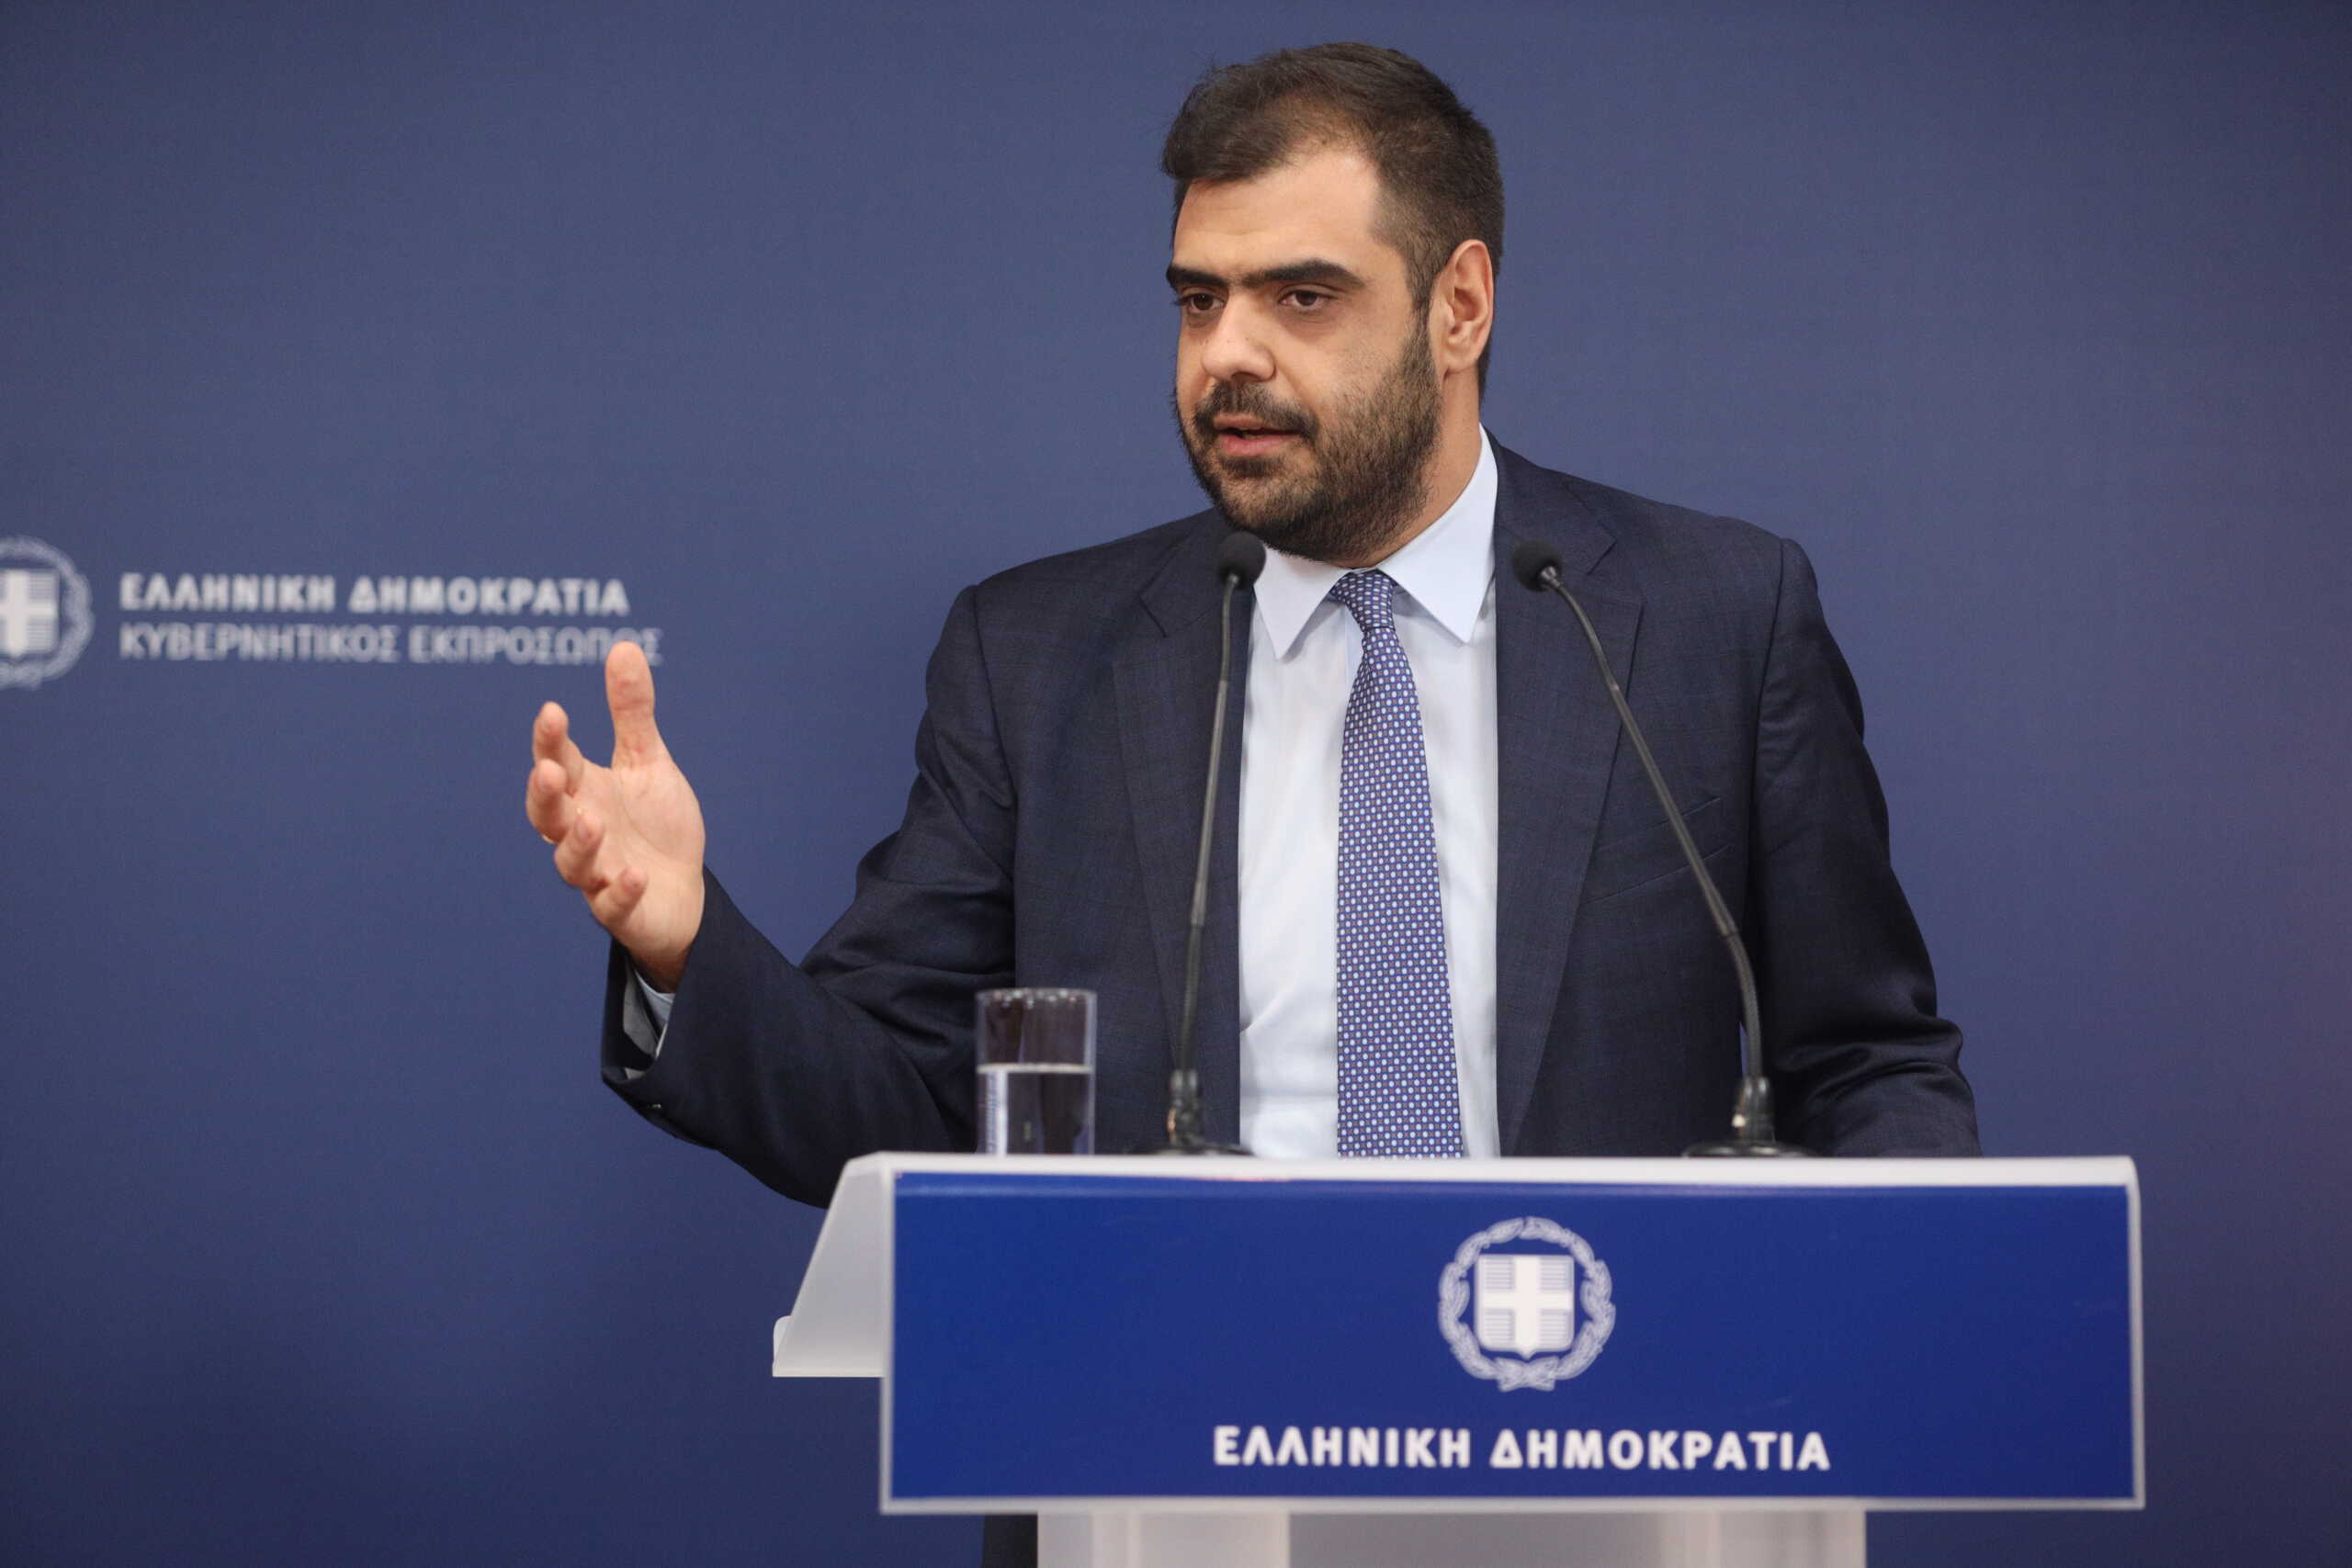 Μαρινάκης σε Κασσελάκη: «Σήμερα στην Ελλάδα δεν λειτουργούν παραϋπουργεία Δικαιοσύνης όπως επί ΣΥΡΙΖΑ»